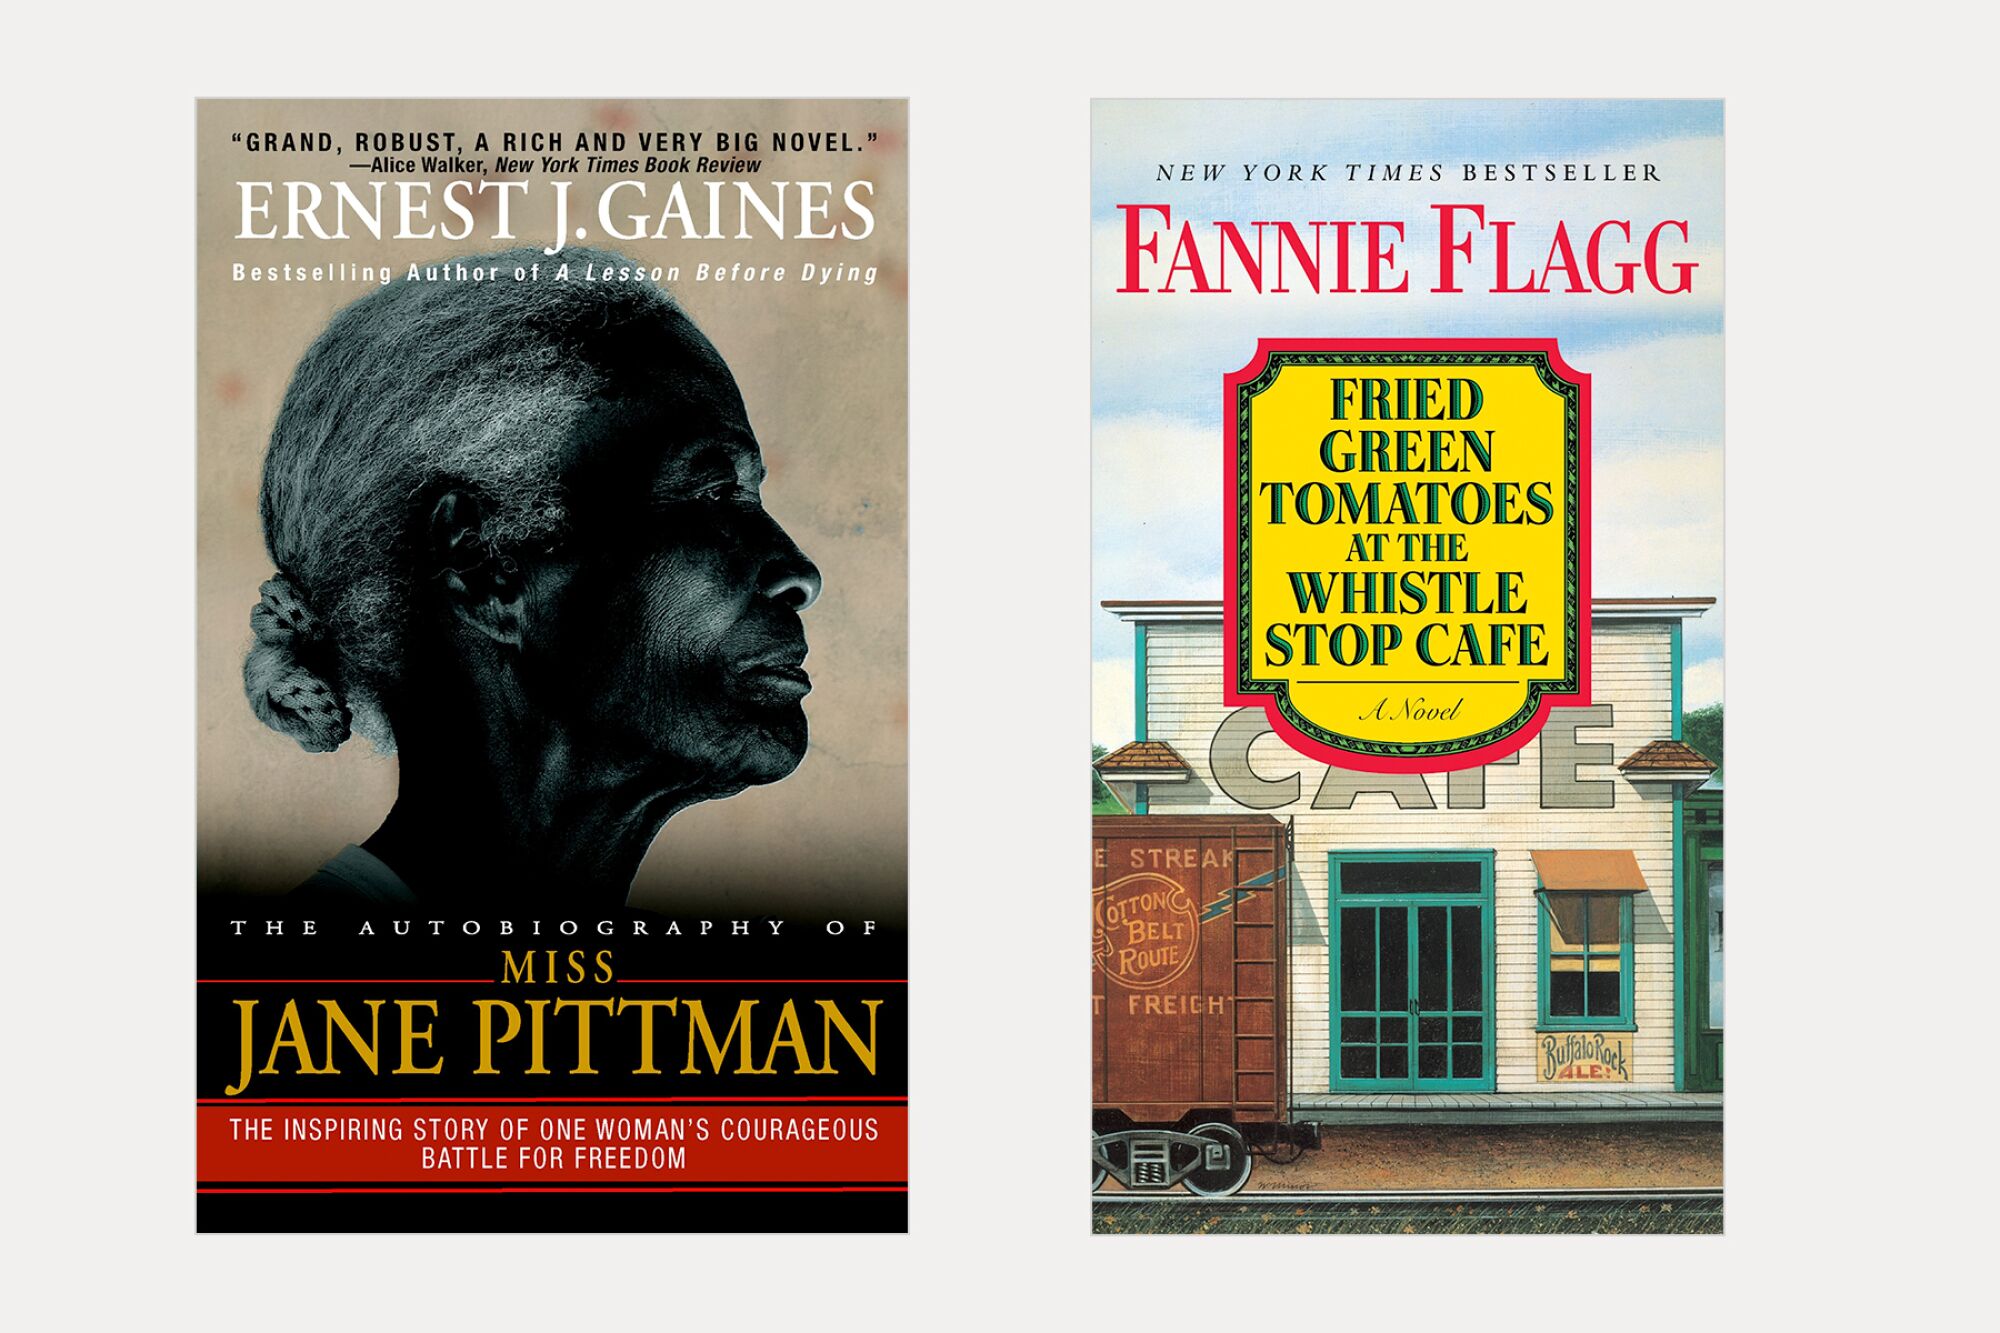 iki kitap: Ernest J. Gaines'in yazdığı Miss Jane Pittman ve Fannie Flagg'in Whistle Stop Cafe'de Fried Green Tomatoes